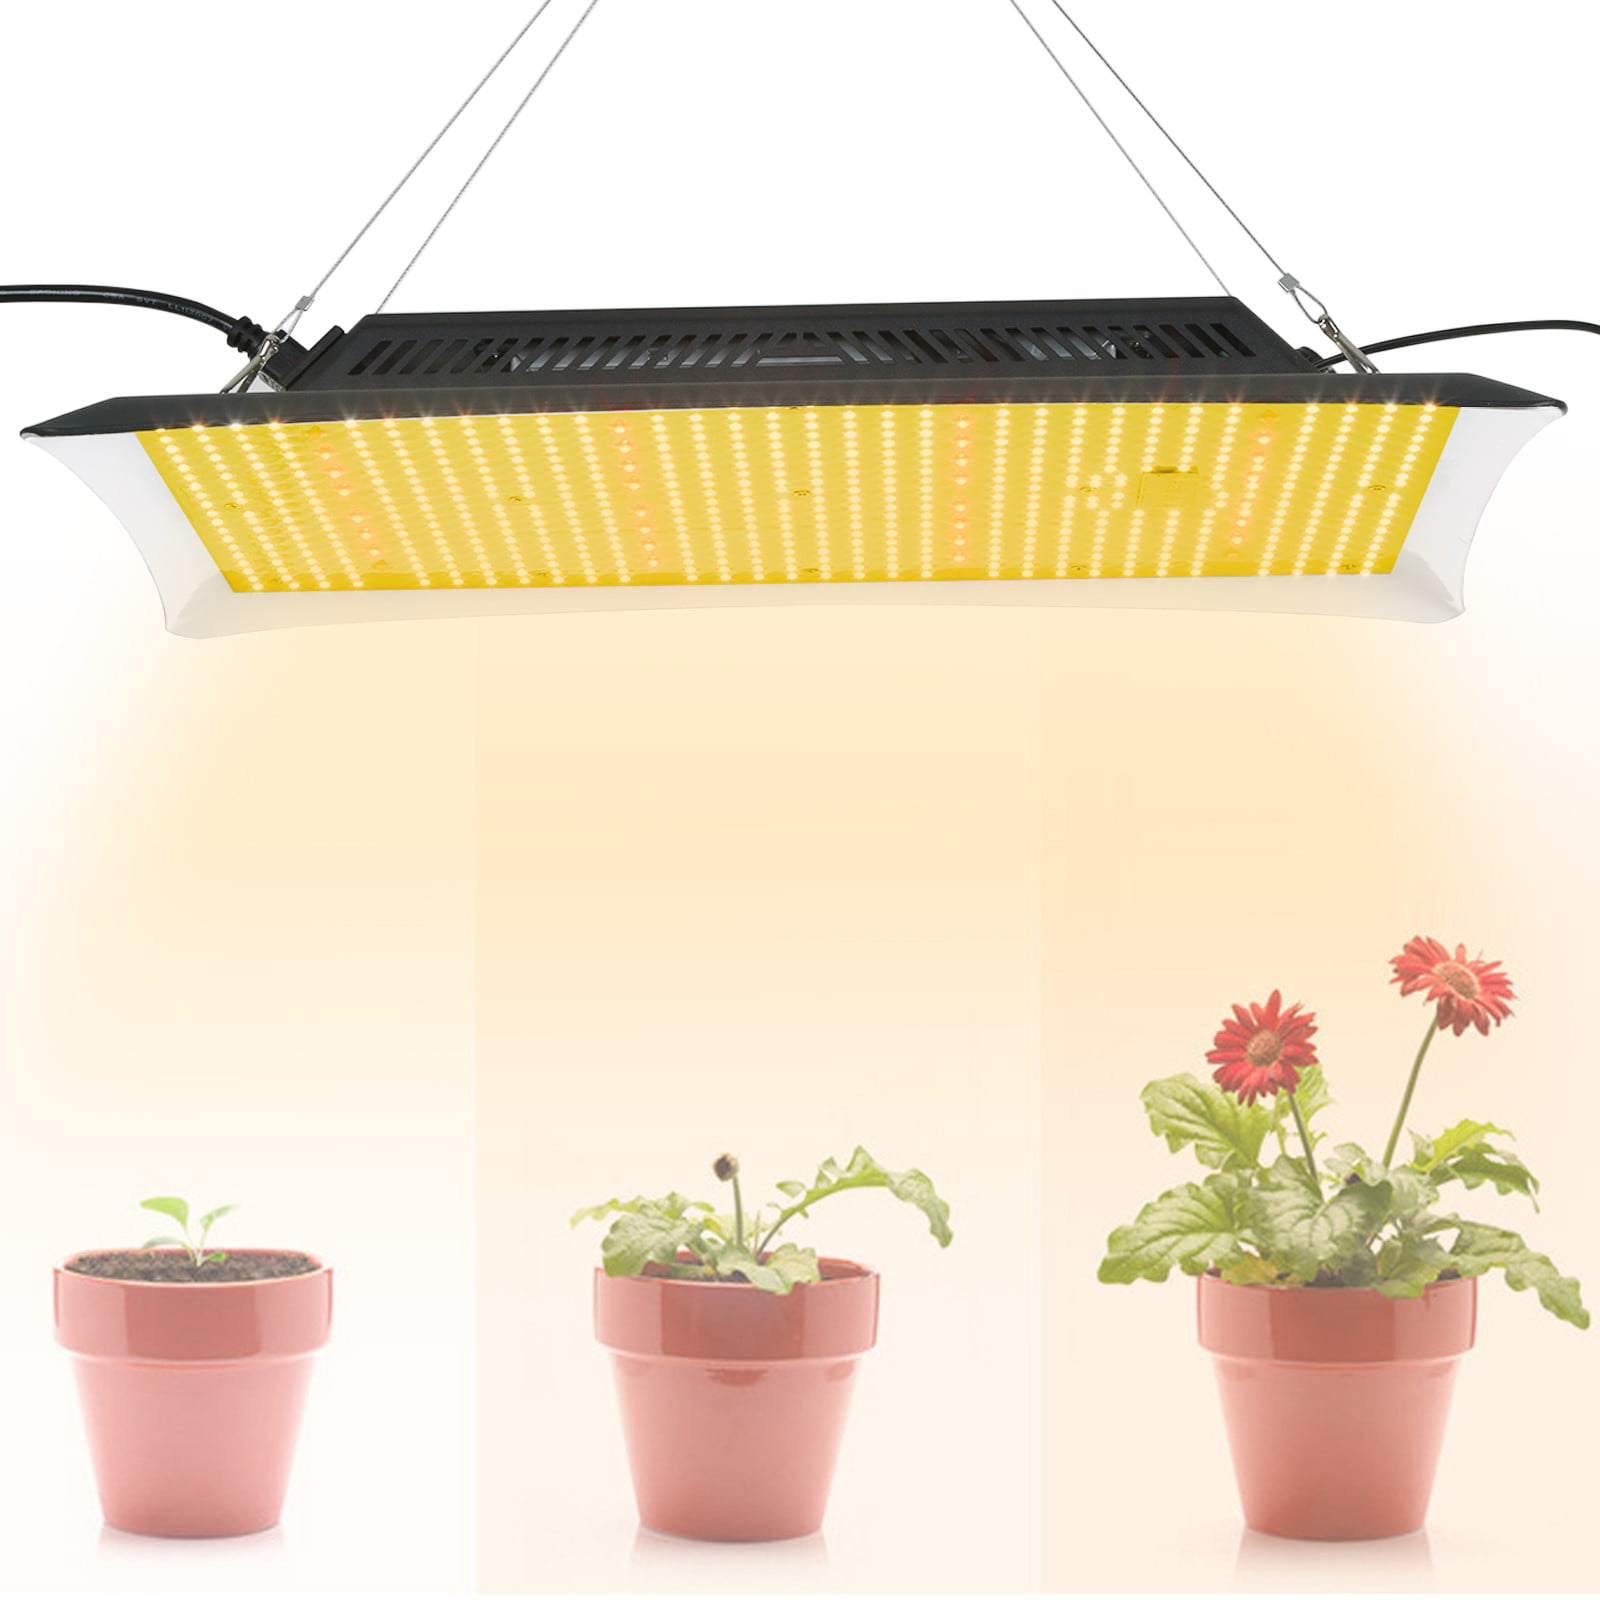 8000W LED Grow Light Lamp Full Spectrum for Indoor Plants Veg Flower Chain US 